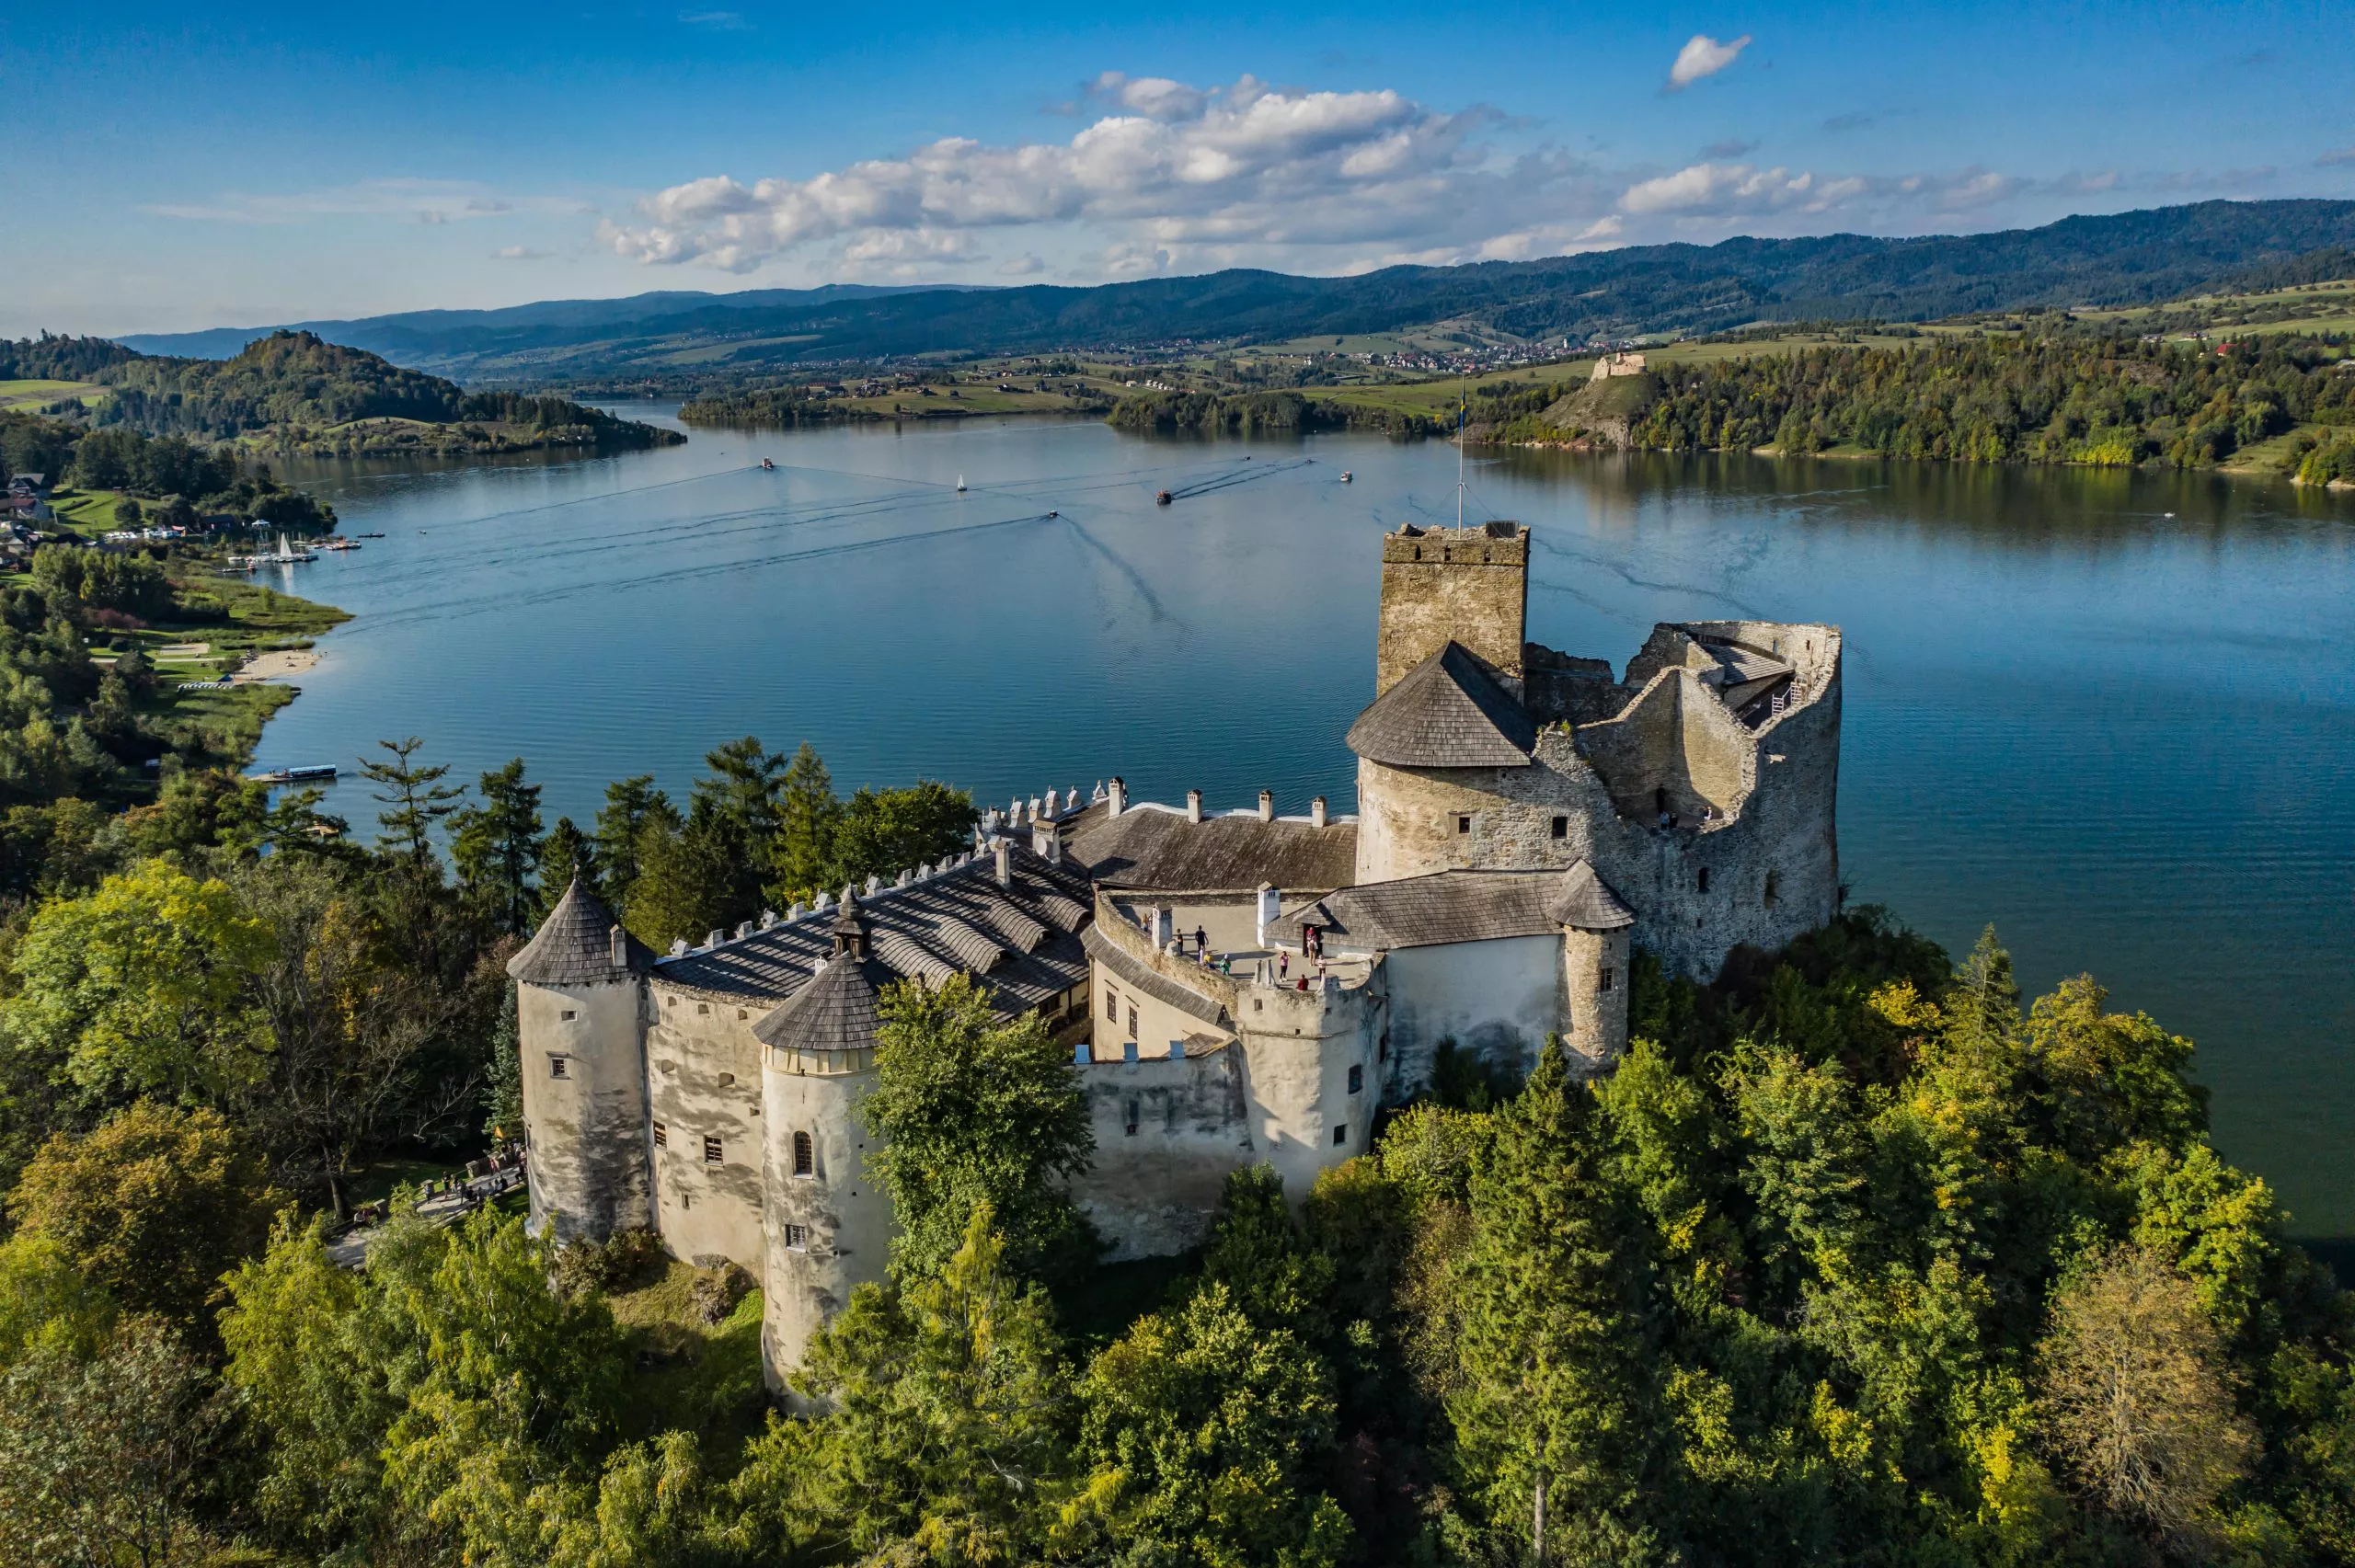 Blick auf die steinerne Burg in Niedzica und einen Abschnitt des Czorsztyńskie-Sees, auf dem verschiedene Segelboote, Kanus, Pontons und Schiffe fahren. Die Burg liegt auf einem mit grünen Bäumen bewachsenen Hügel. Der Himmel ist blau mit mittelgroßen, weißen, wogenden Wolken.